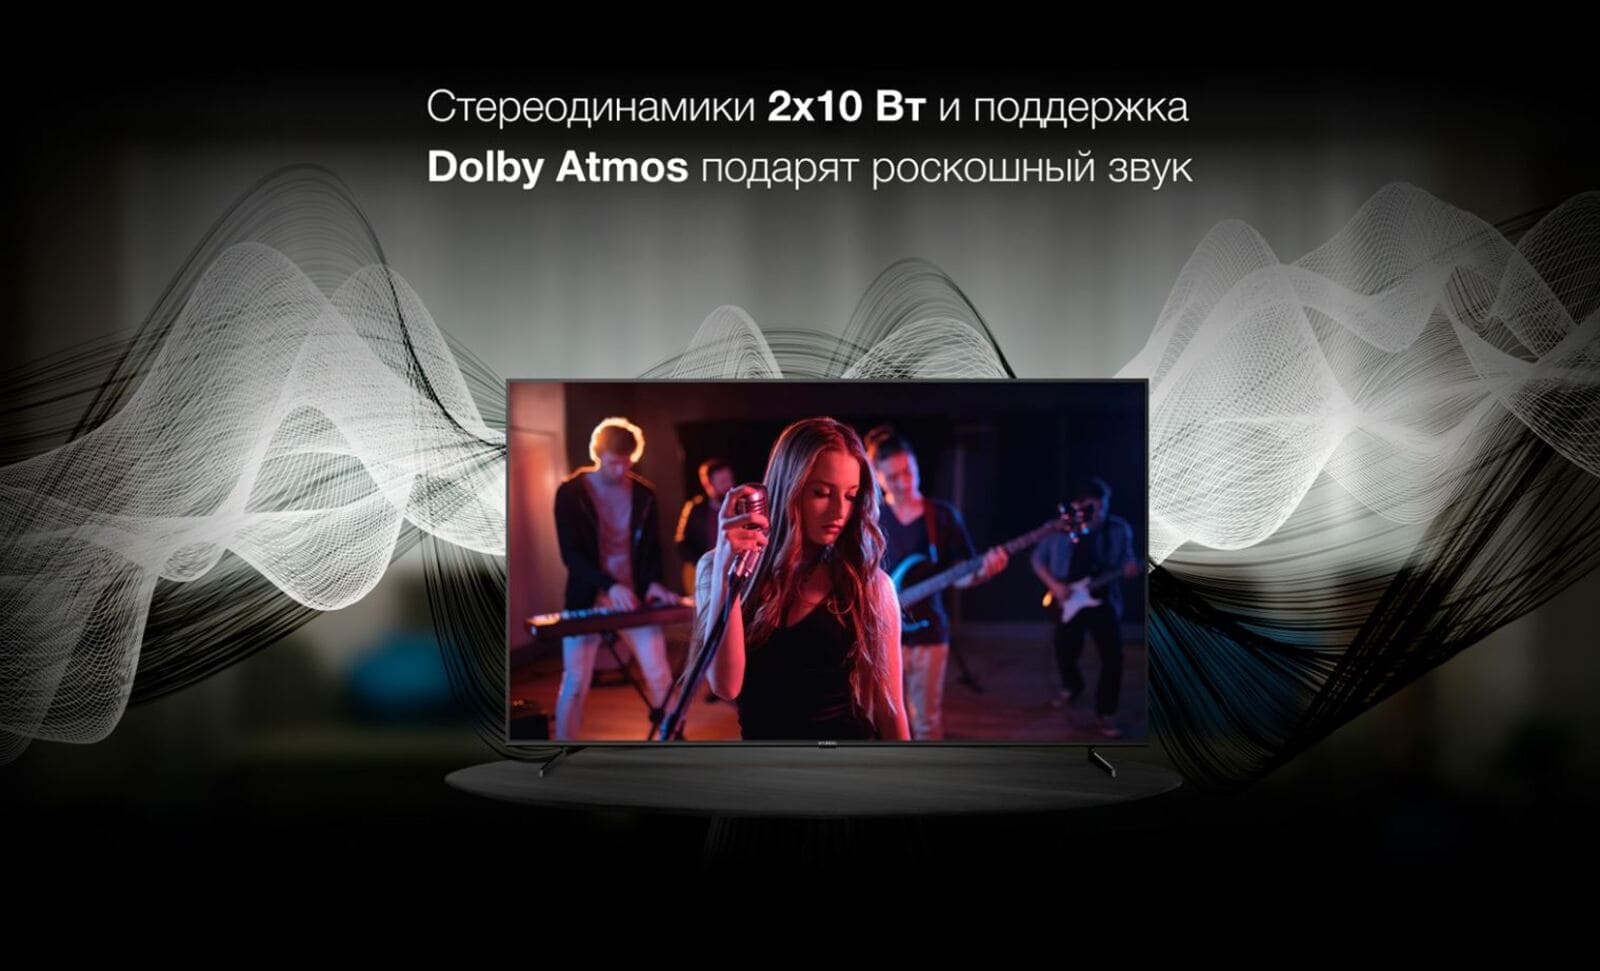 Стереодинамики 2х10 Вт. и поддержка Dolby Atmos подарят розкошный звук.